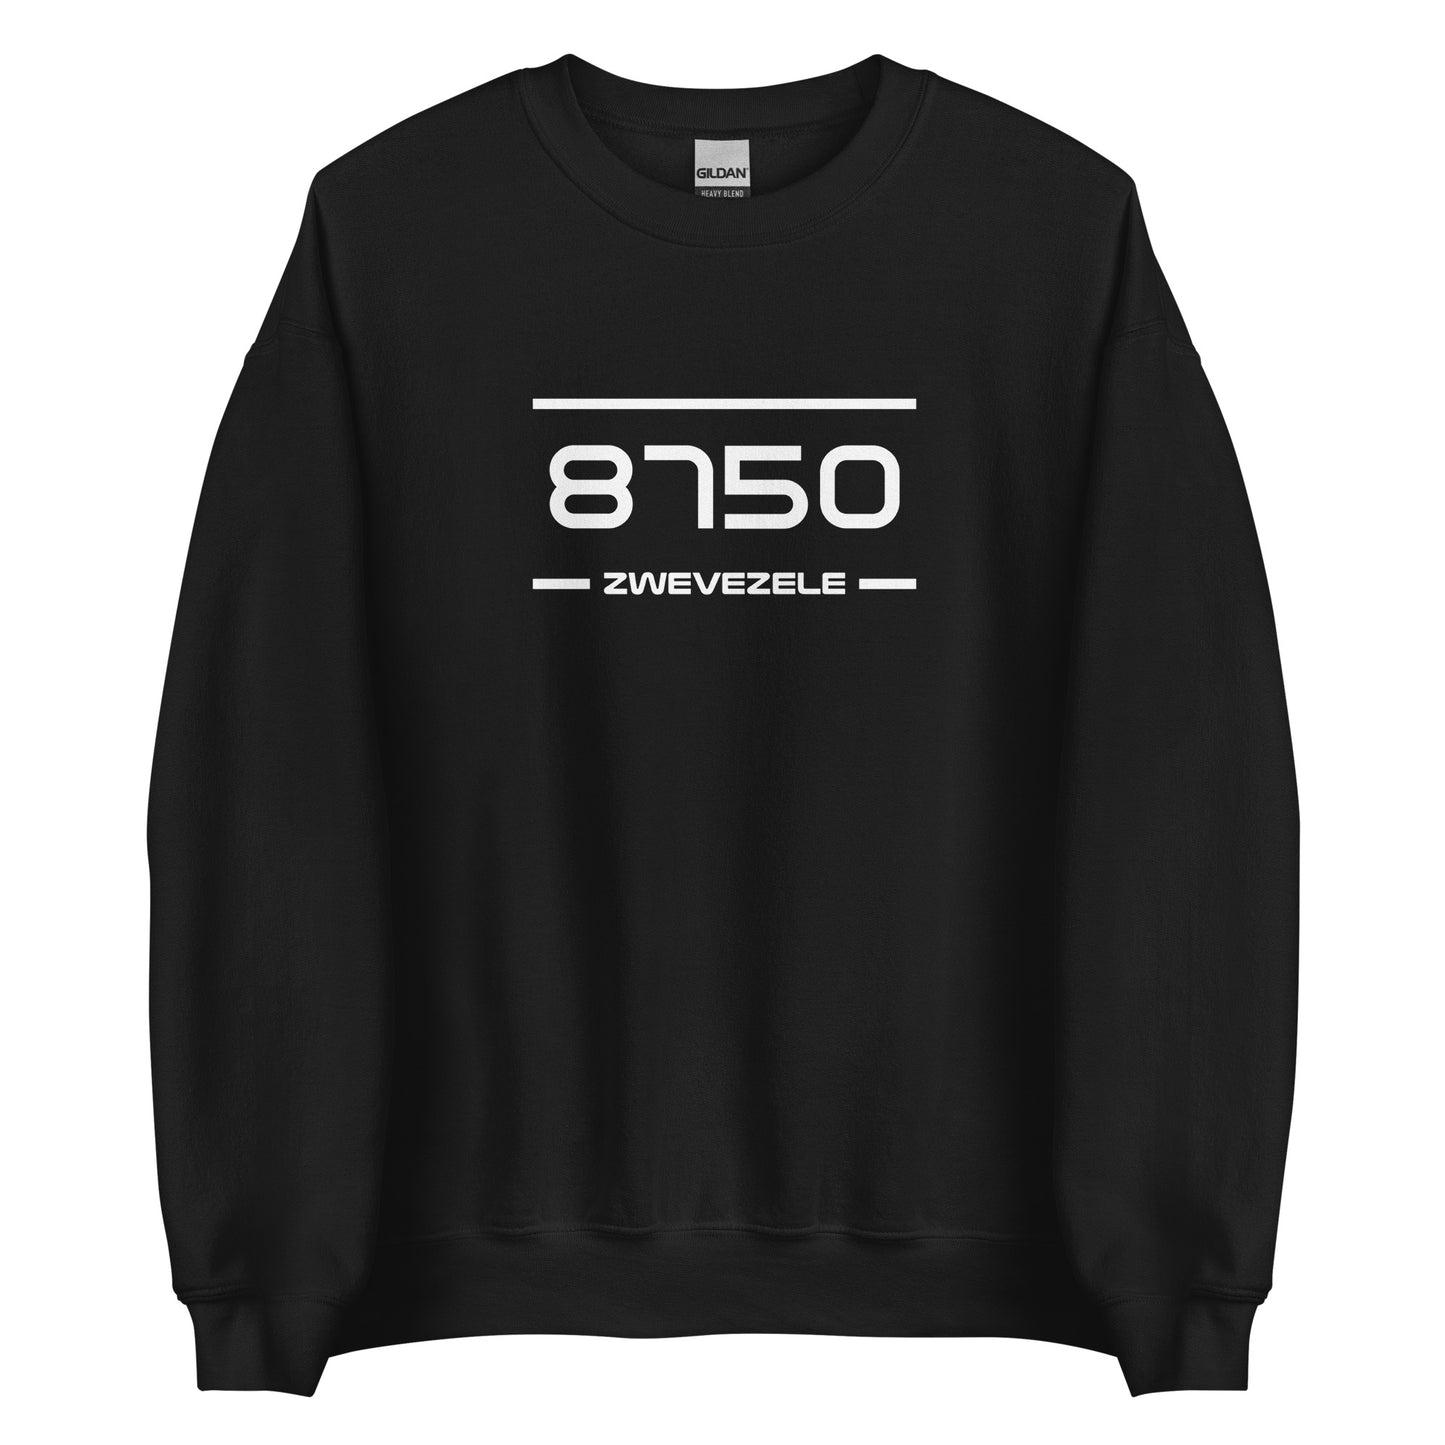 Sweater - 8750 - Zwevezele (M/V)